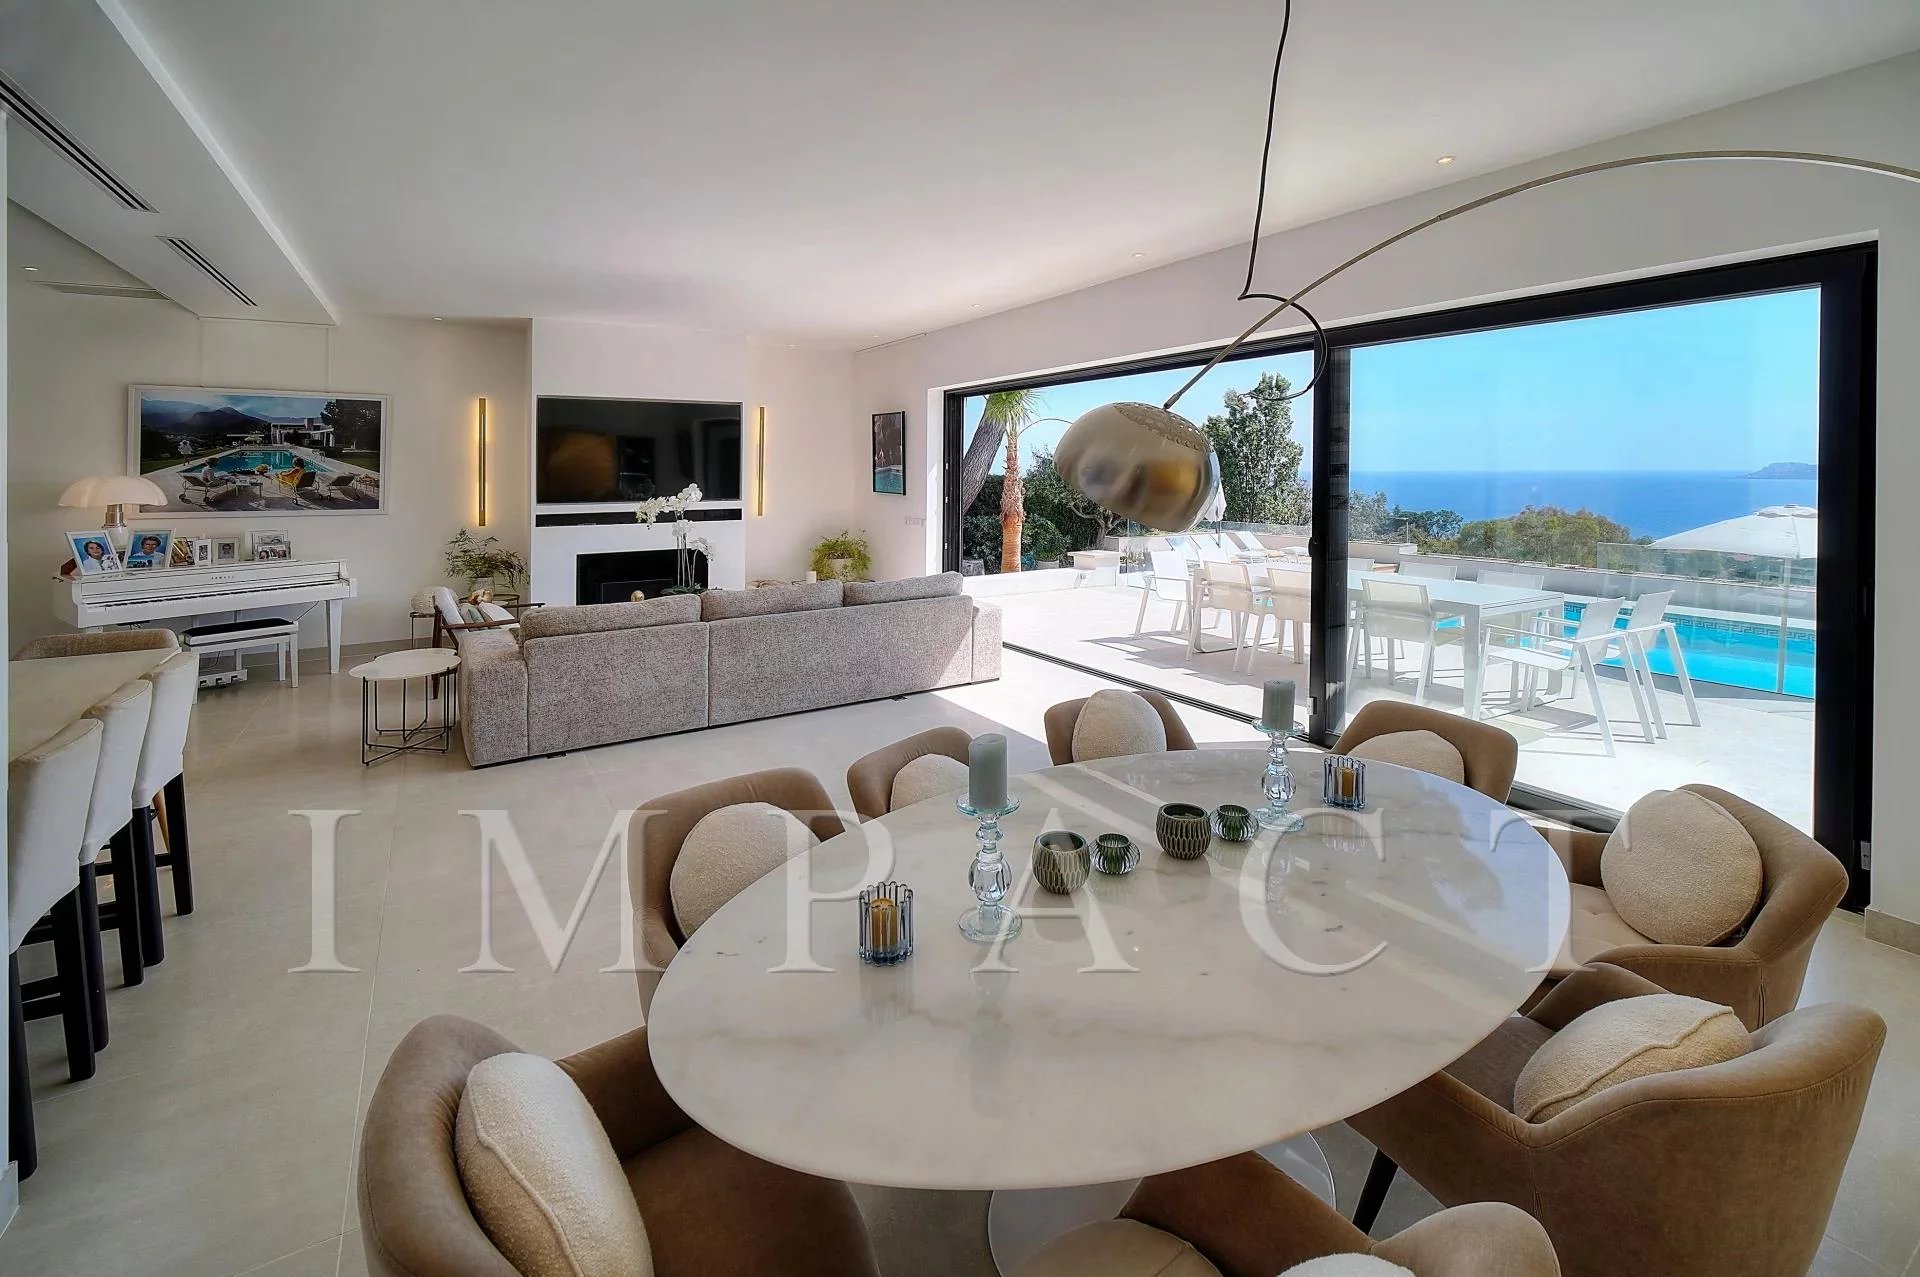 Cannes - Croix-des-Gardes - Villa with sea view for rent